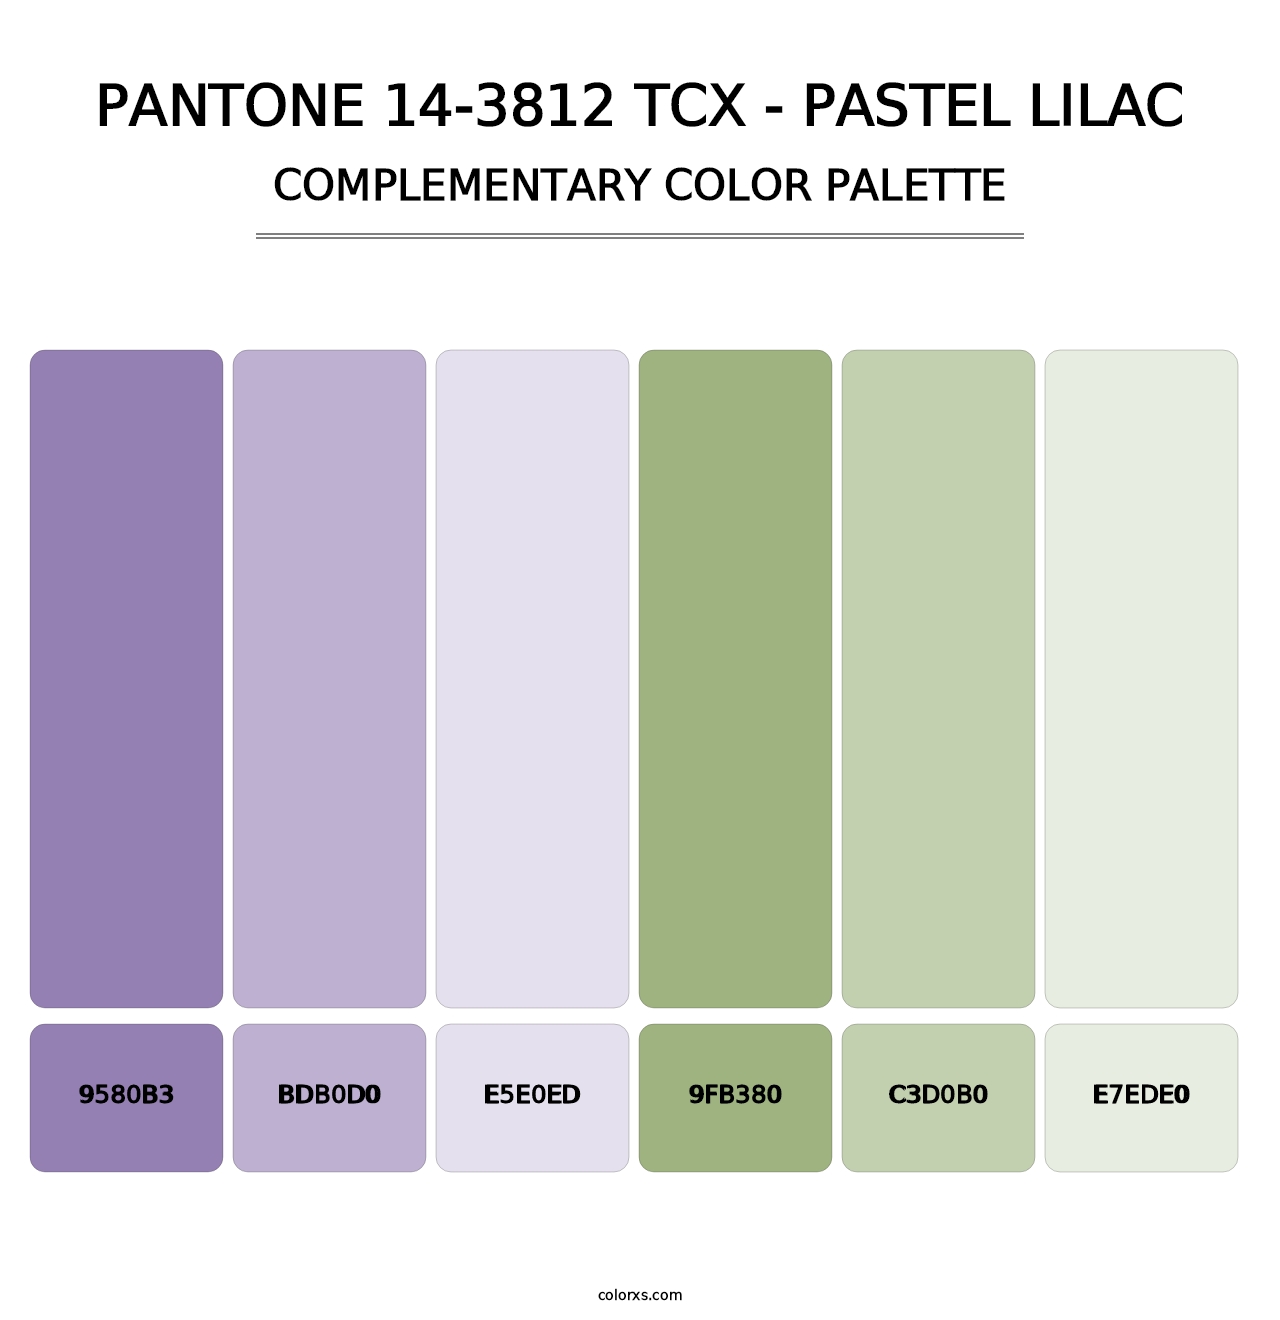 PANTONE 14-3812 TCX - Pastel Lilac - Complementary Color Palette